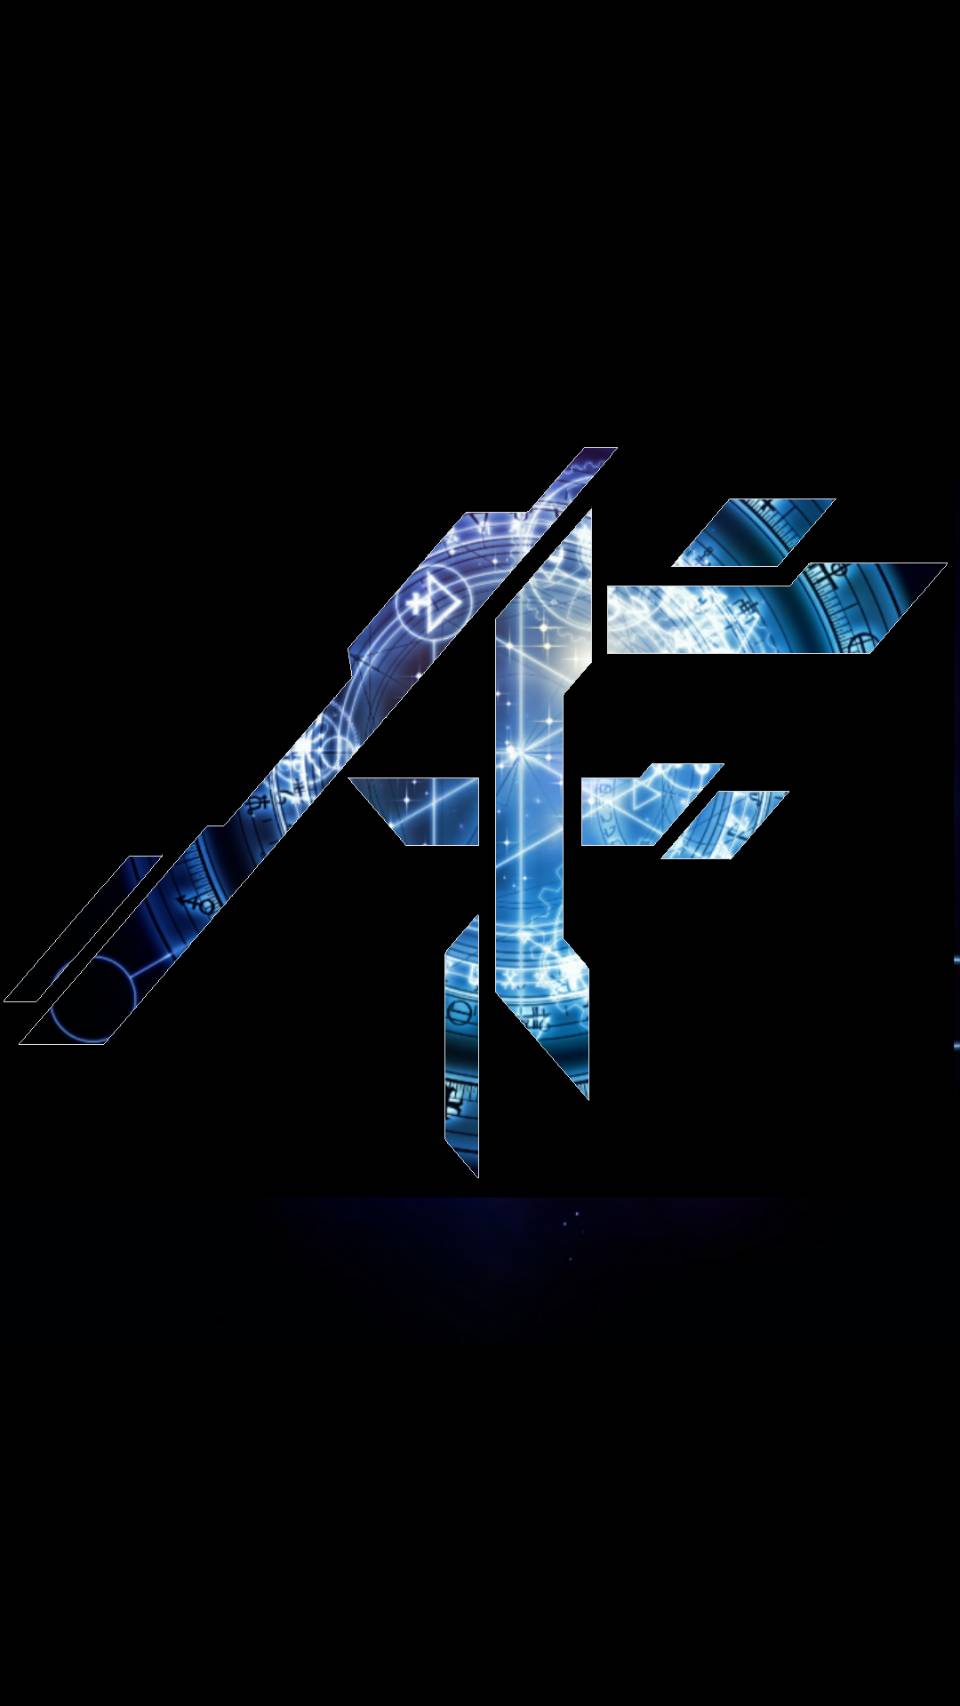 Af Logo - AF Logos